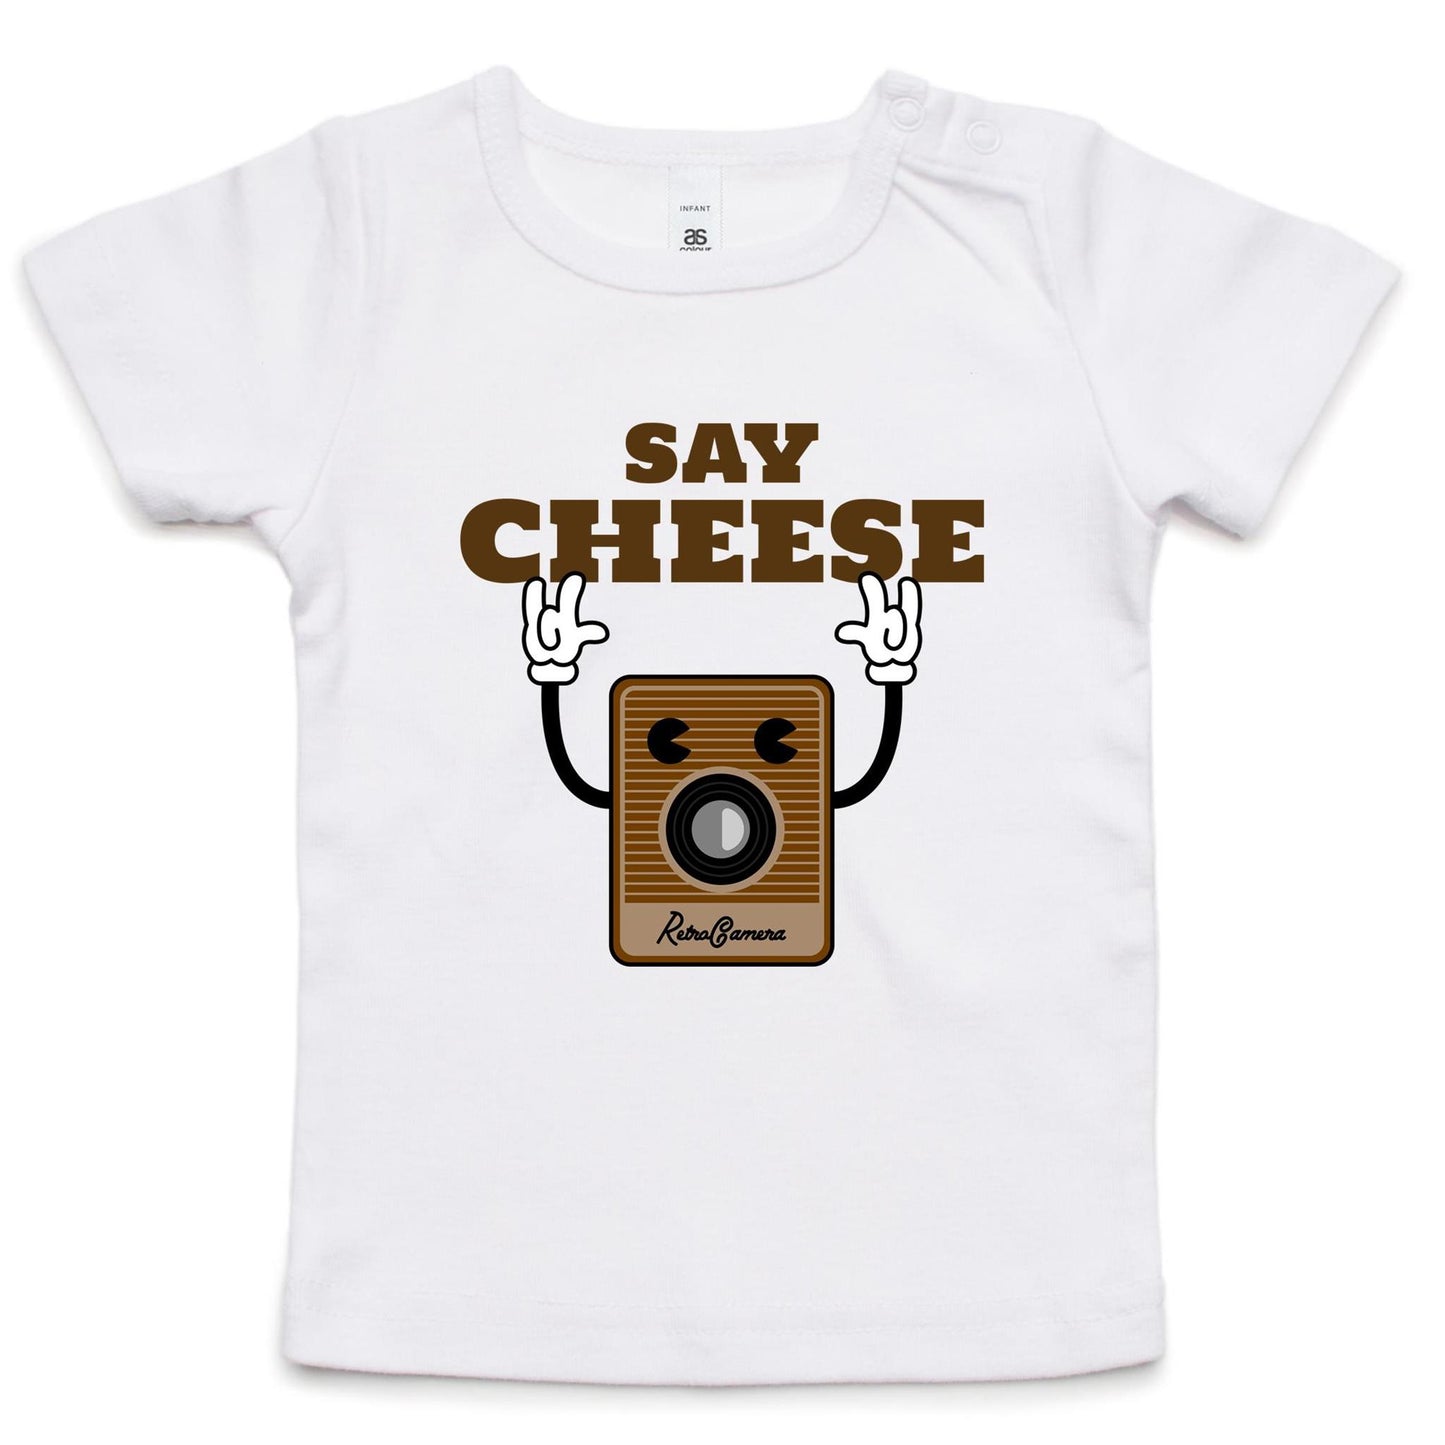 Say Cheese, Retro Camera - Baby T-shirt White Baby T-shirt Retro Tech